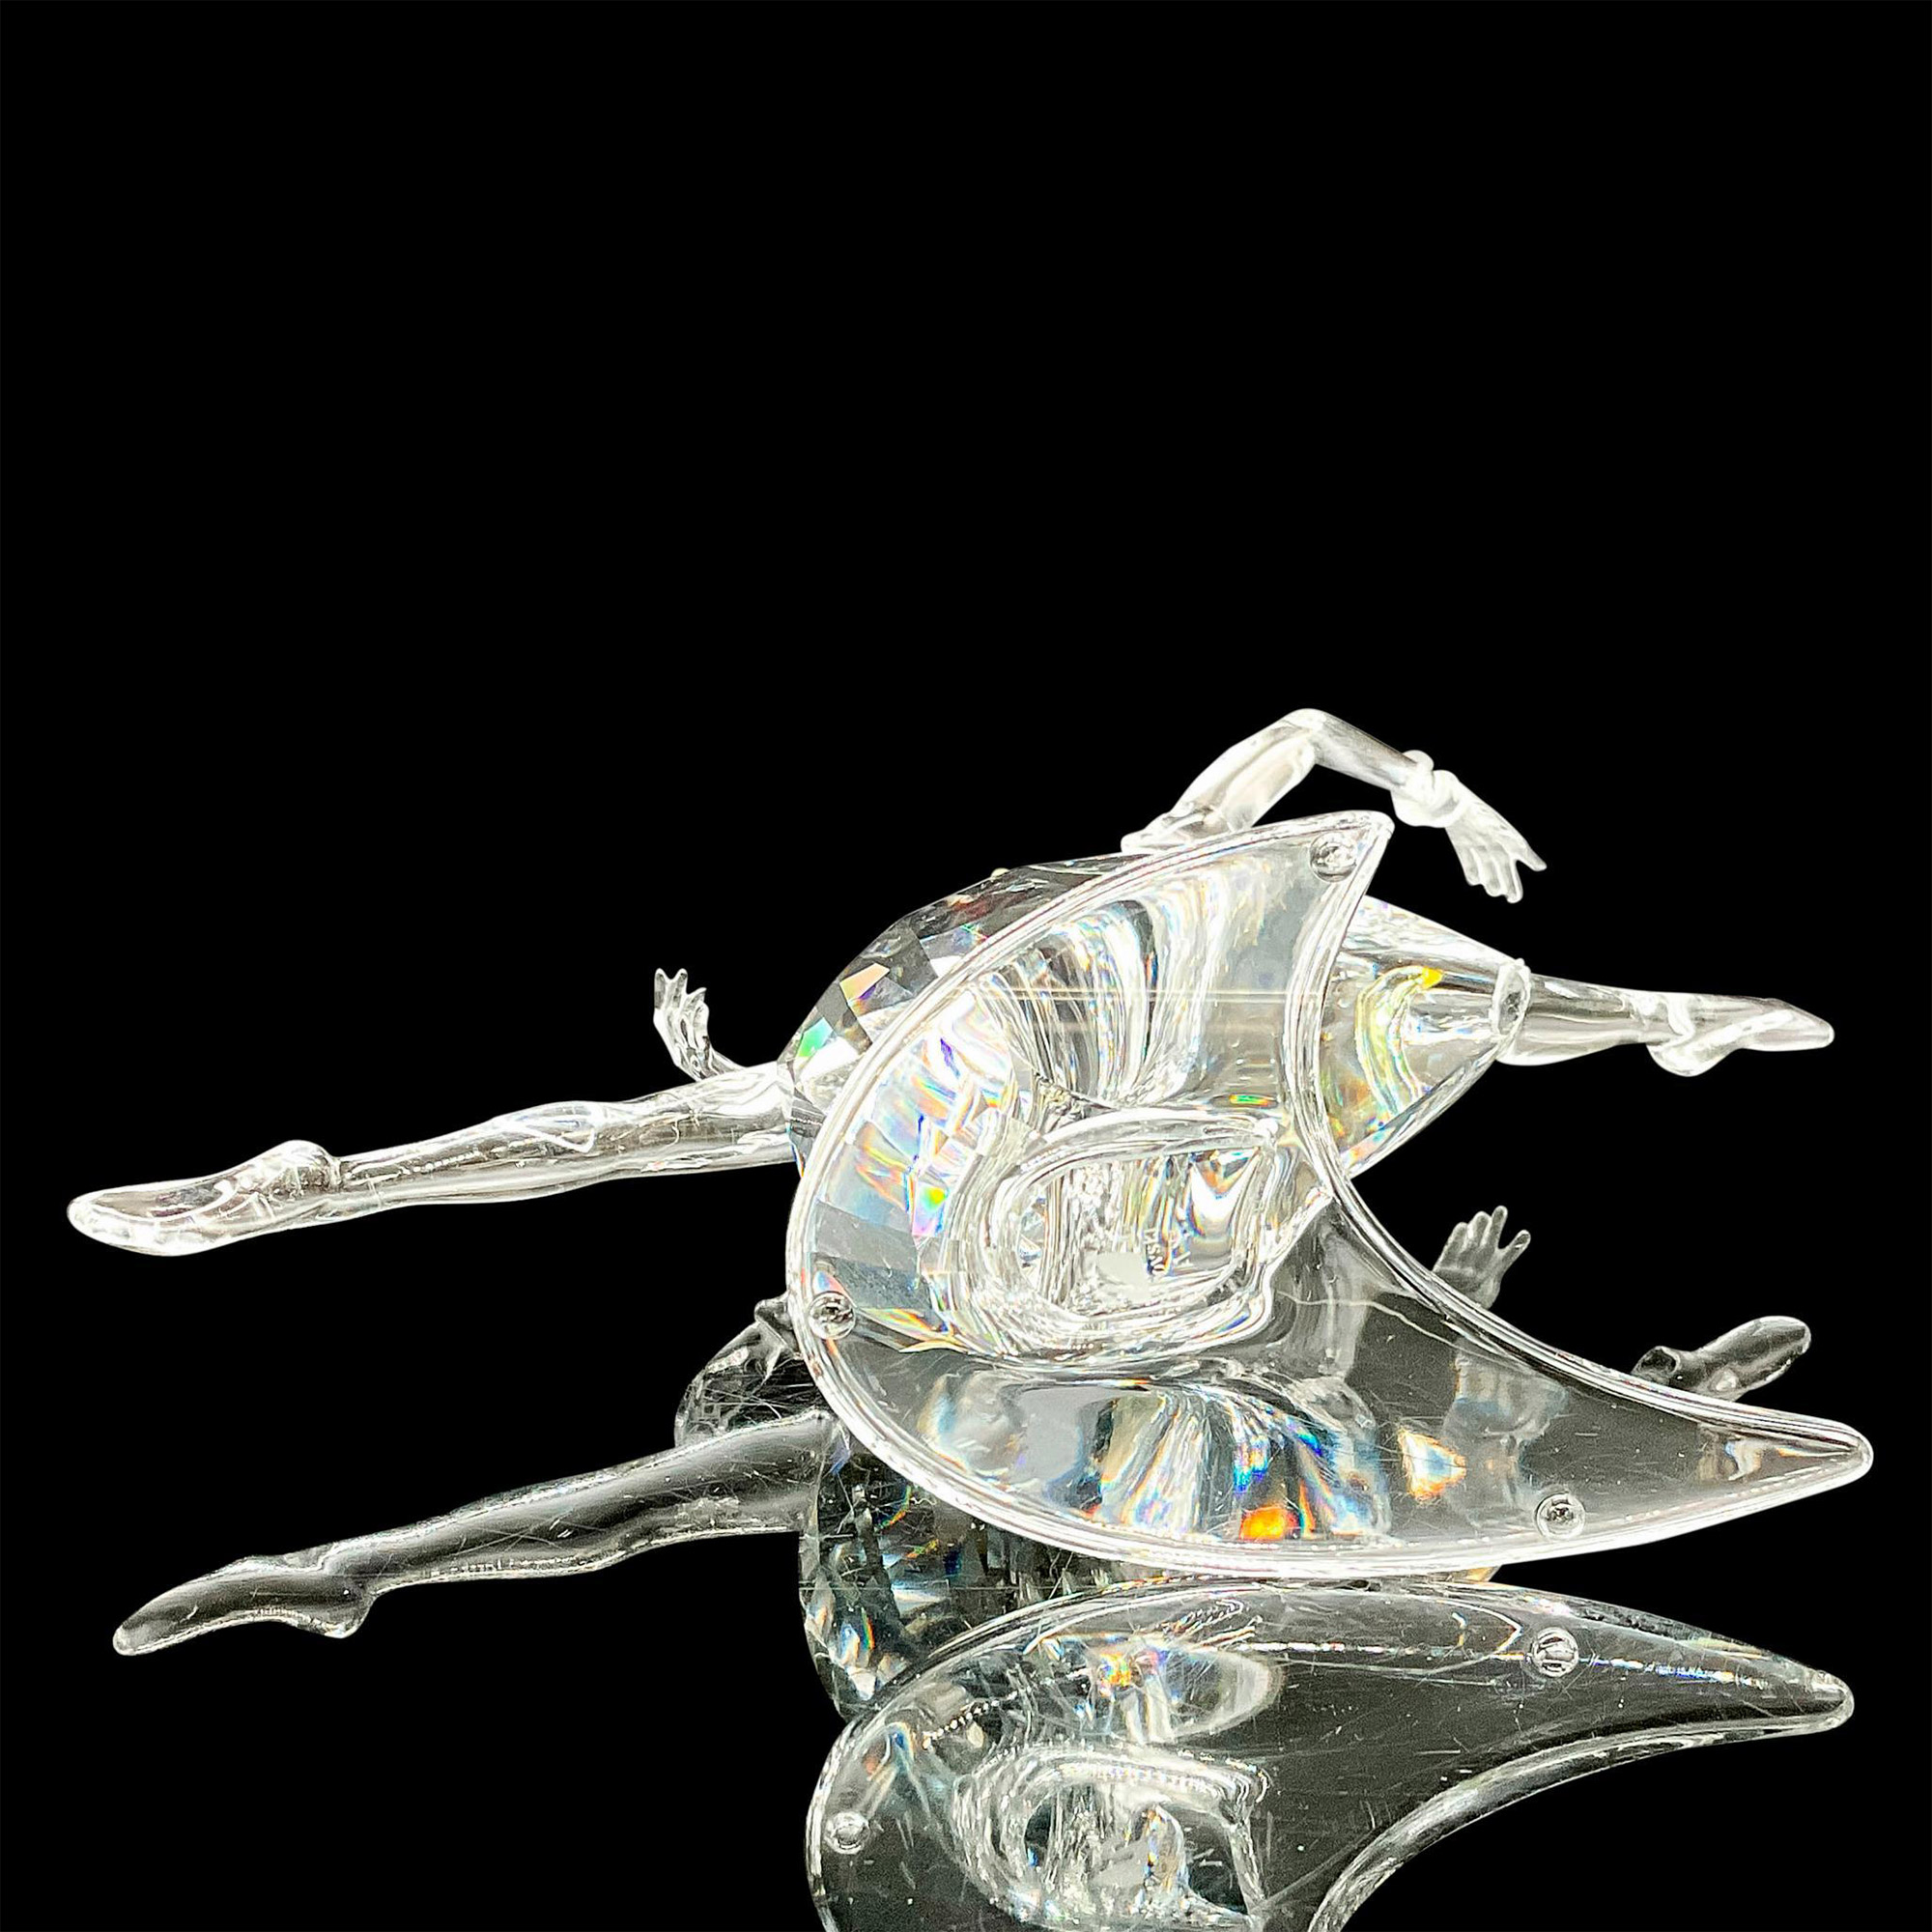 Swarovski SCS Crystal Figurine, Anna - Image 3 of 3